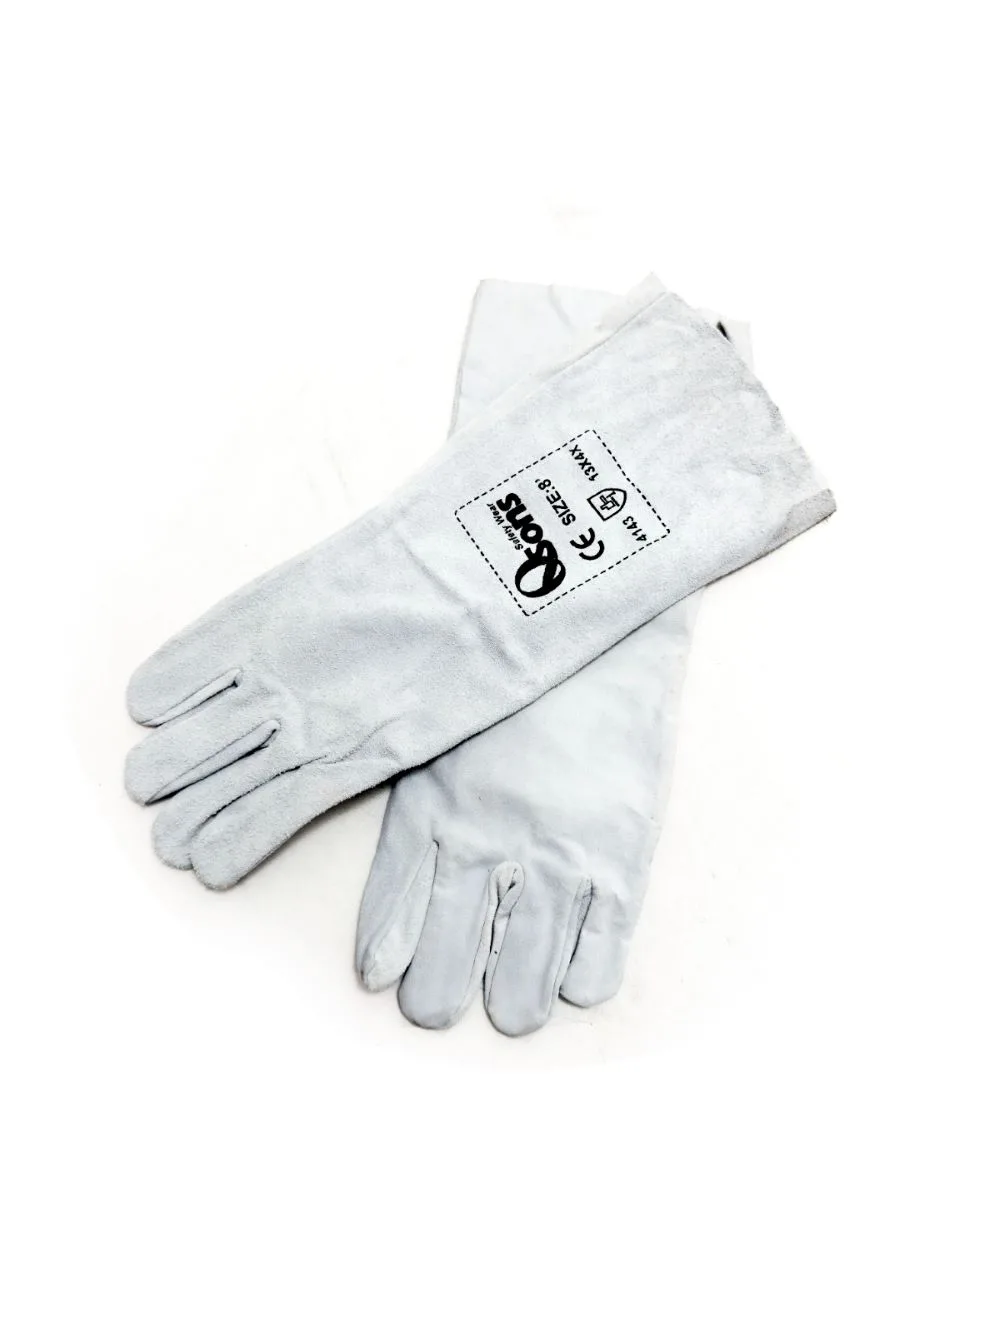 8" Chrome Welding Gloves